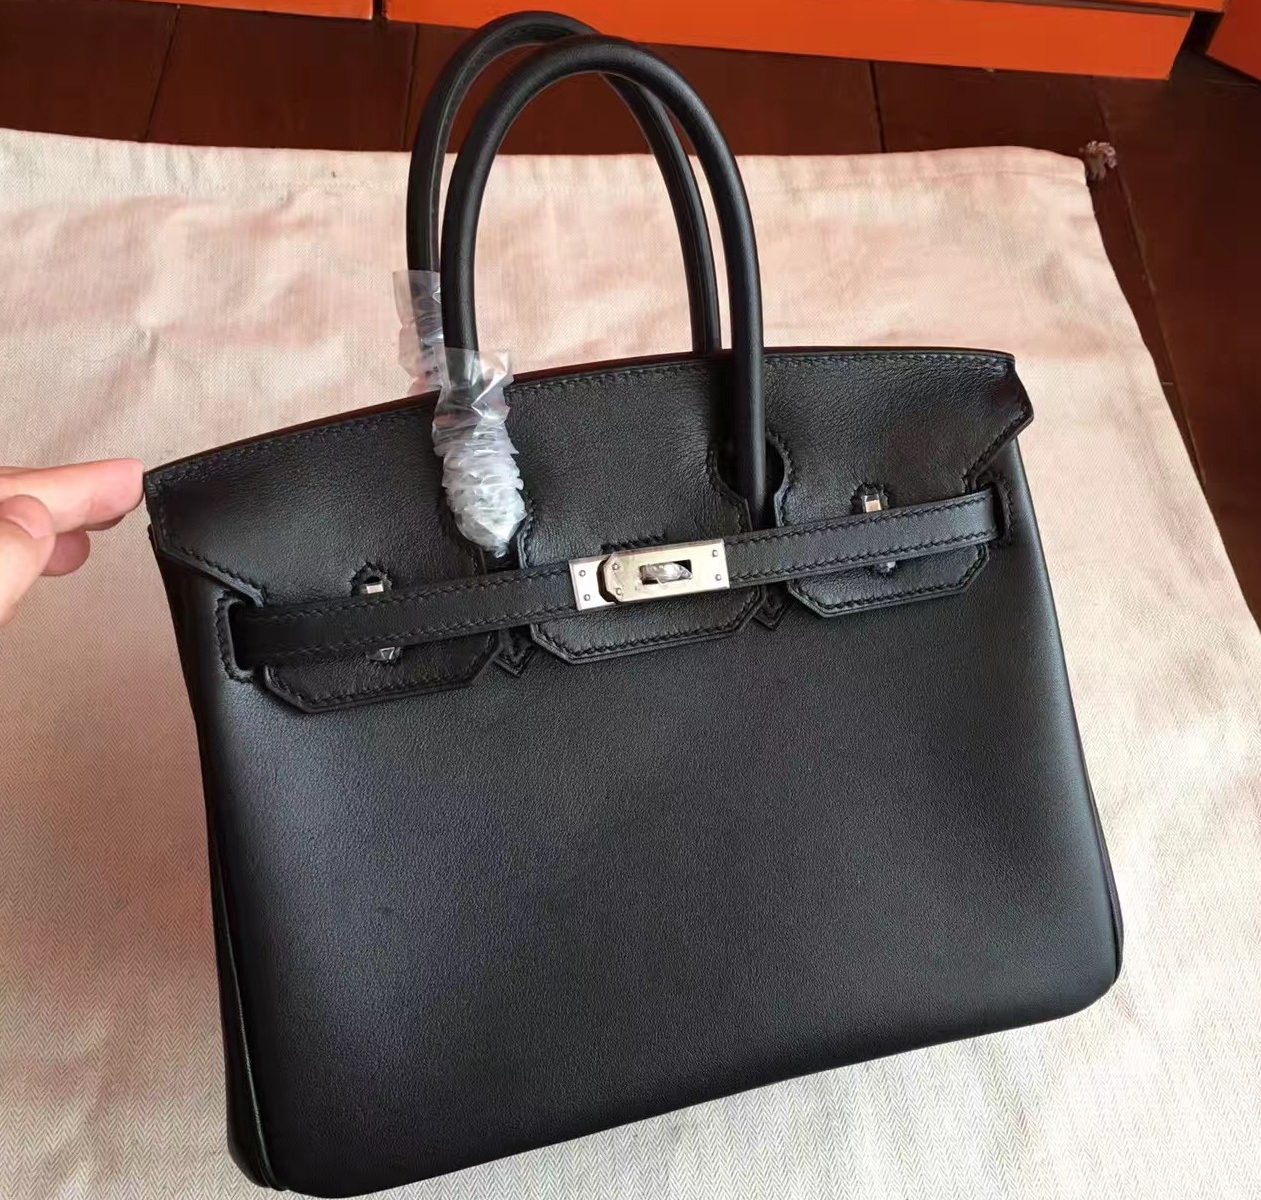 2019 New Style Hermes Black Swift Birkin 25cm Handmade Bag Fresno, CA – hermes replica evelyne ...